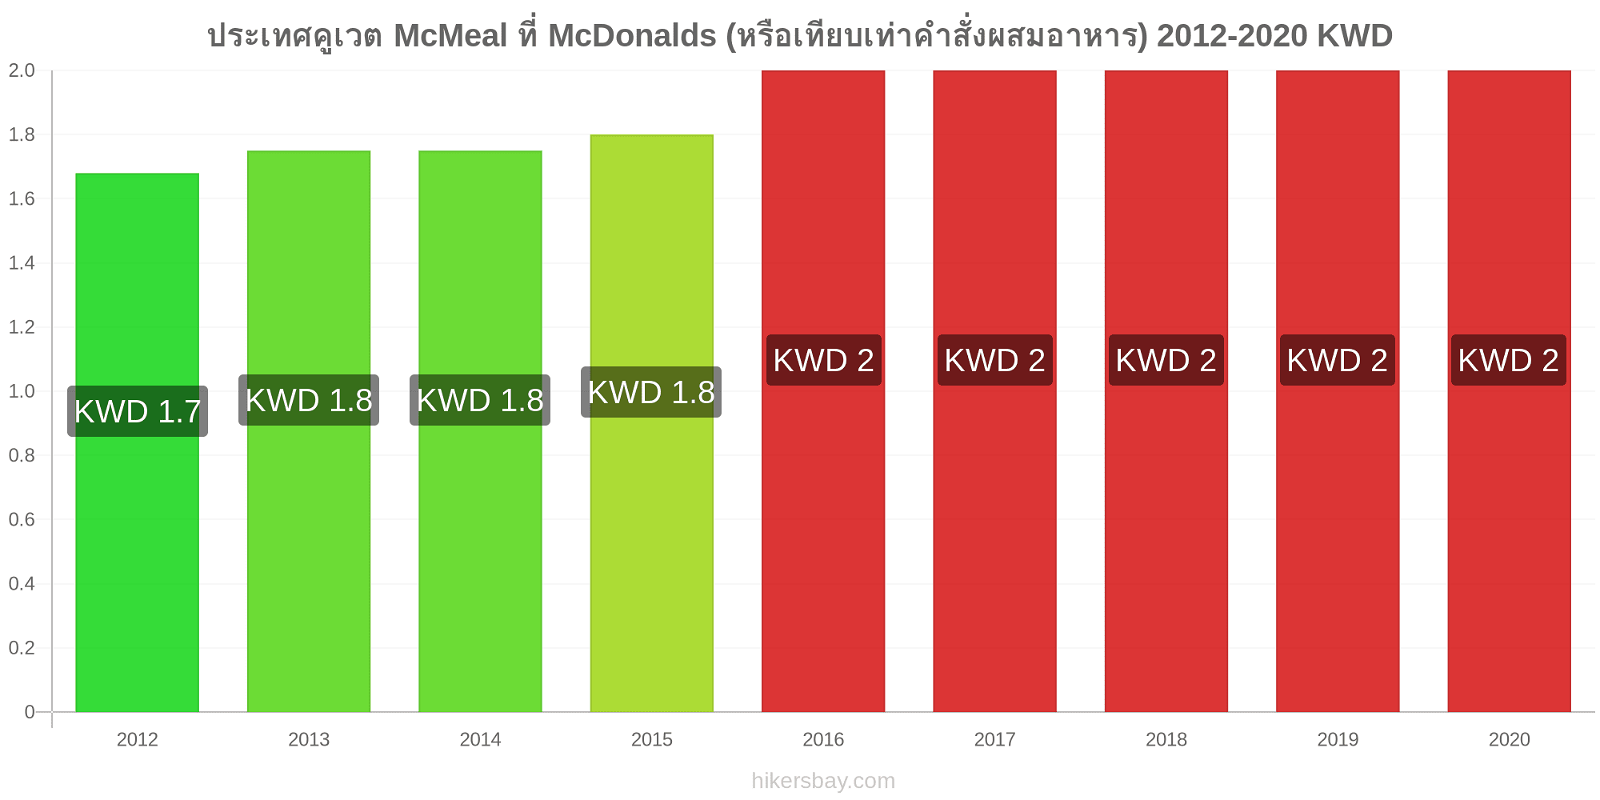 ประเทศคูเวต การเปลี่ยนแปลงราคา McMeal ที่ McDonalds (หรือเทียบเท่าคำสั่งผสมอาหาร) hikersbay.com